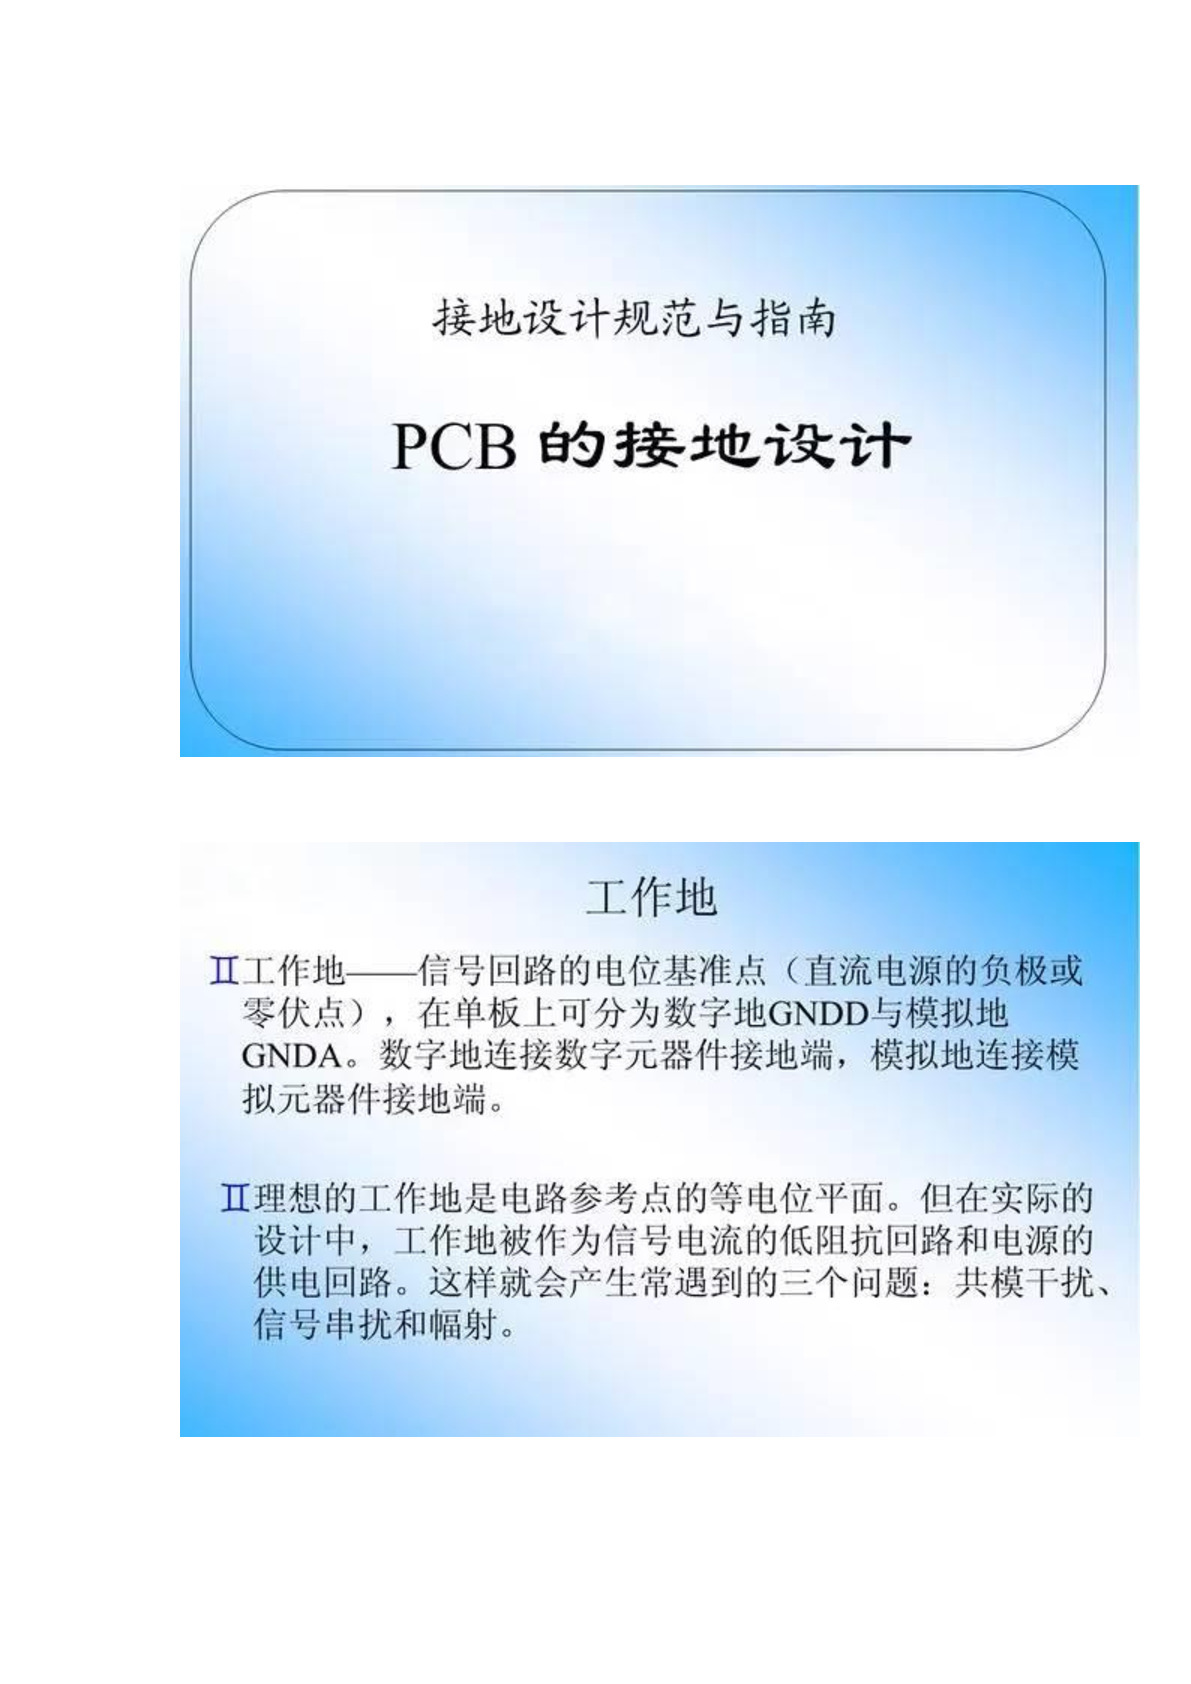 PCB的接地设计规范与指南